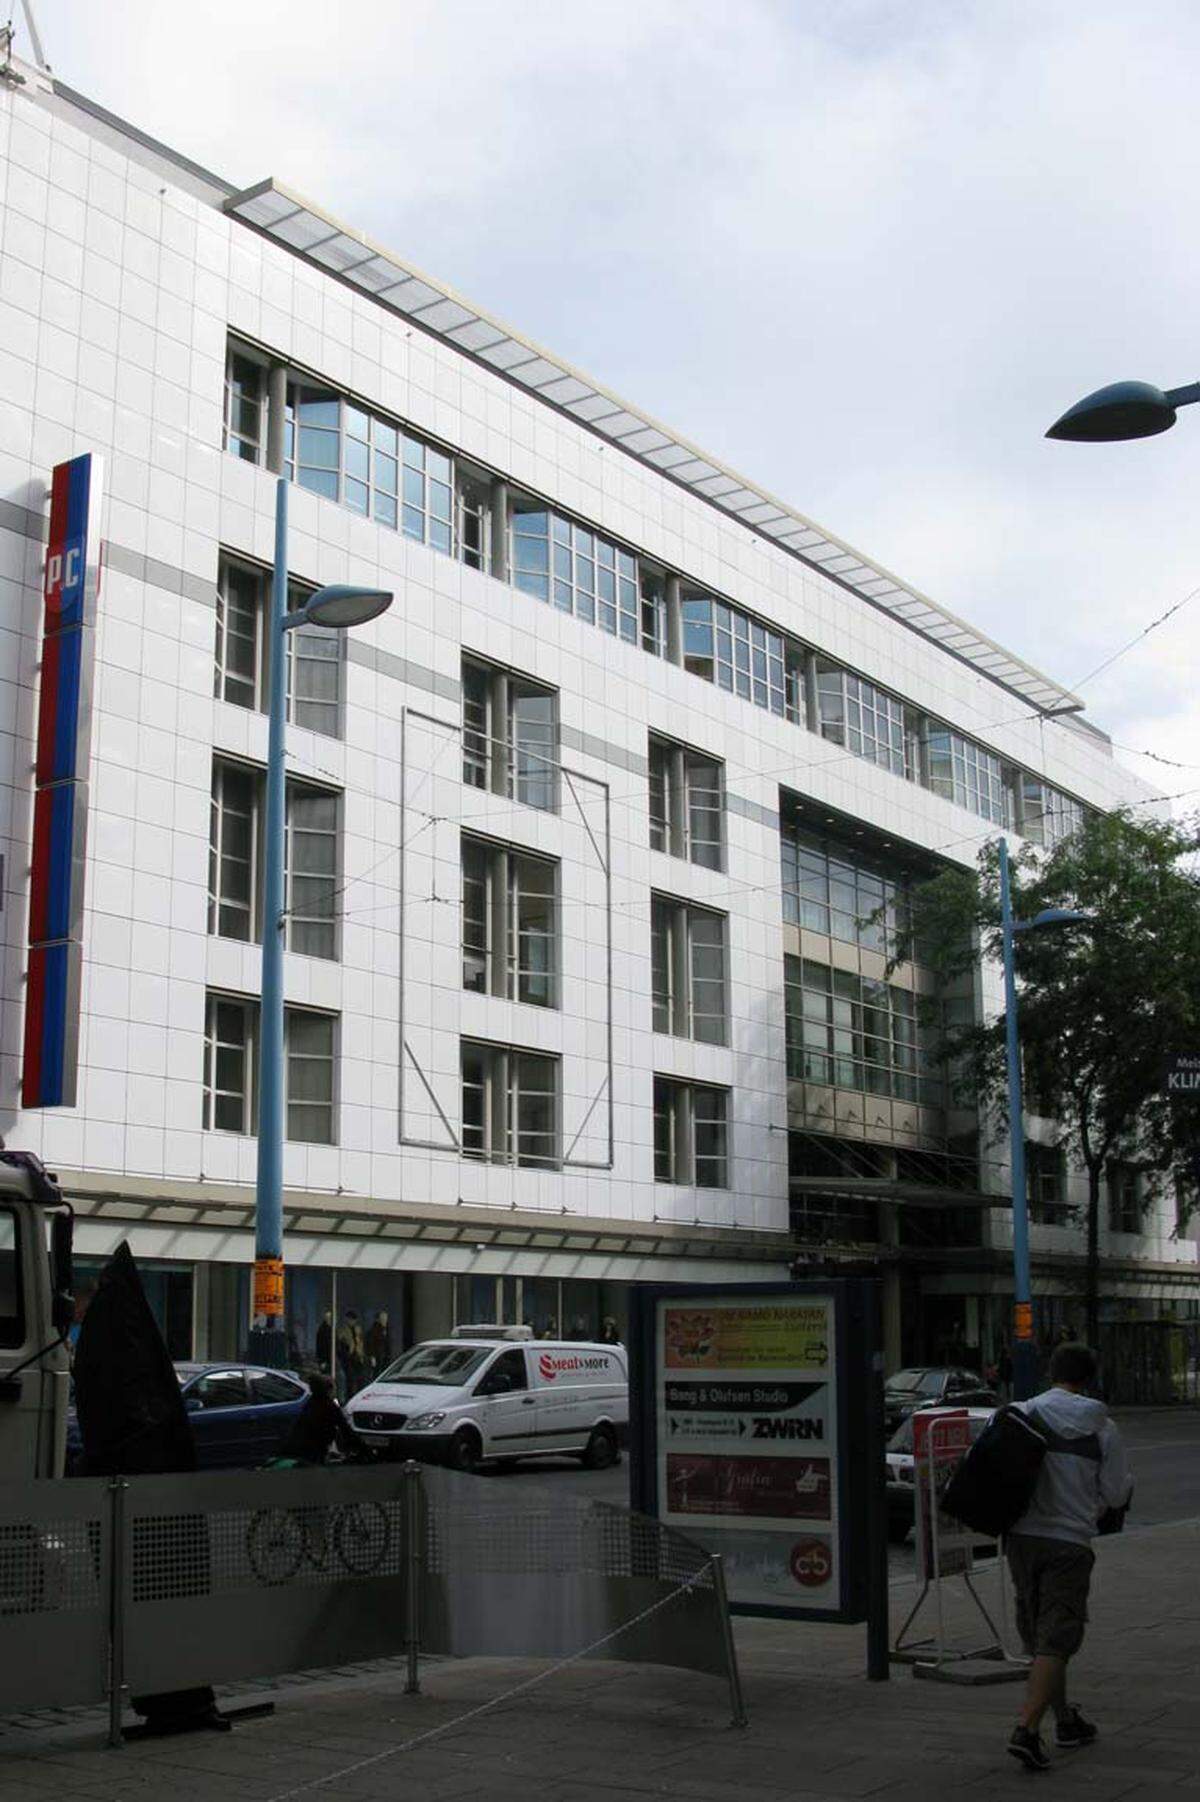 1998 eröffnete im ehemaligen Warenhaus Herzmansky eine Peek & Cloppenburg Filiale. Am Gründergebäude in der Stiftsgasse und auf den Marmortafeln im Erdgeschoss des Gebäudes ist bis heute noch die Aufschrift "A. Herzmansky" in goldener Umrahmung zu lesen.